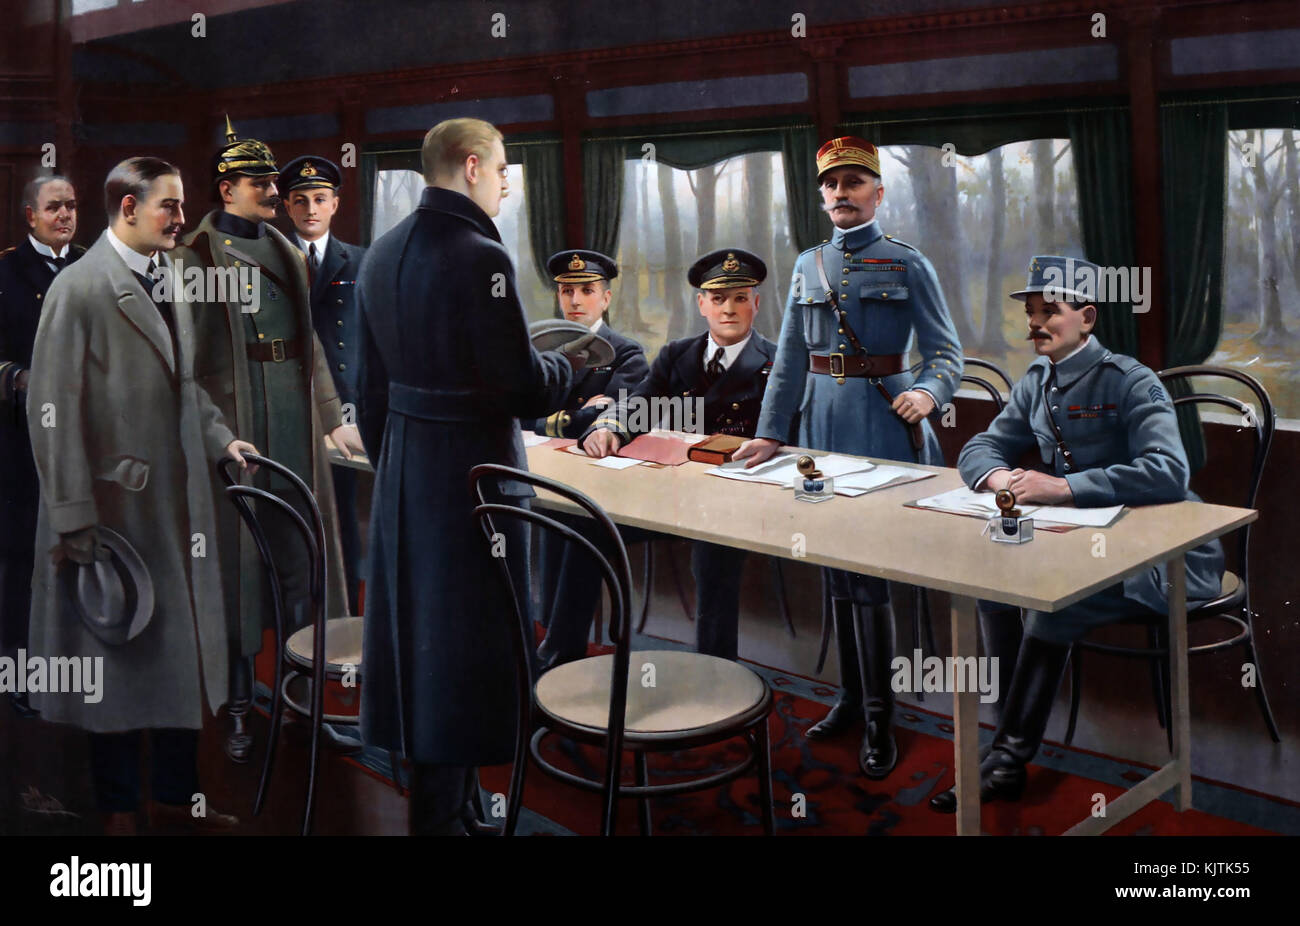 Première GUERRE MONDIALE ARMISTICE signé le 11 novembre 1918. De gauche à droite : l'amiral allemand Ernst VANESLOW, le comte allemand Alfred von OBERNDORFF du ministère des Affaires étrangères, le général allemand Detlof von WINTERFELDT (helmeted), l'officier de la marine britannique, le capitaine Jack MARRIOTT, debout devant la table, Matthias ERZBERGER Chef de la délégation allemande. Derrière la table se trouvent des officiers de la marine britannique, le contre-amiral George HOPE, le premier seigneur de la mer, l'amiral Sir Rosslyn WEMYSS, et les représentants français, le maréchal Ferdinand FOCH (debout), et le général Maxime WEYGAND Banque D'Images